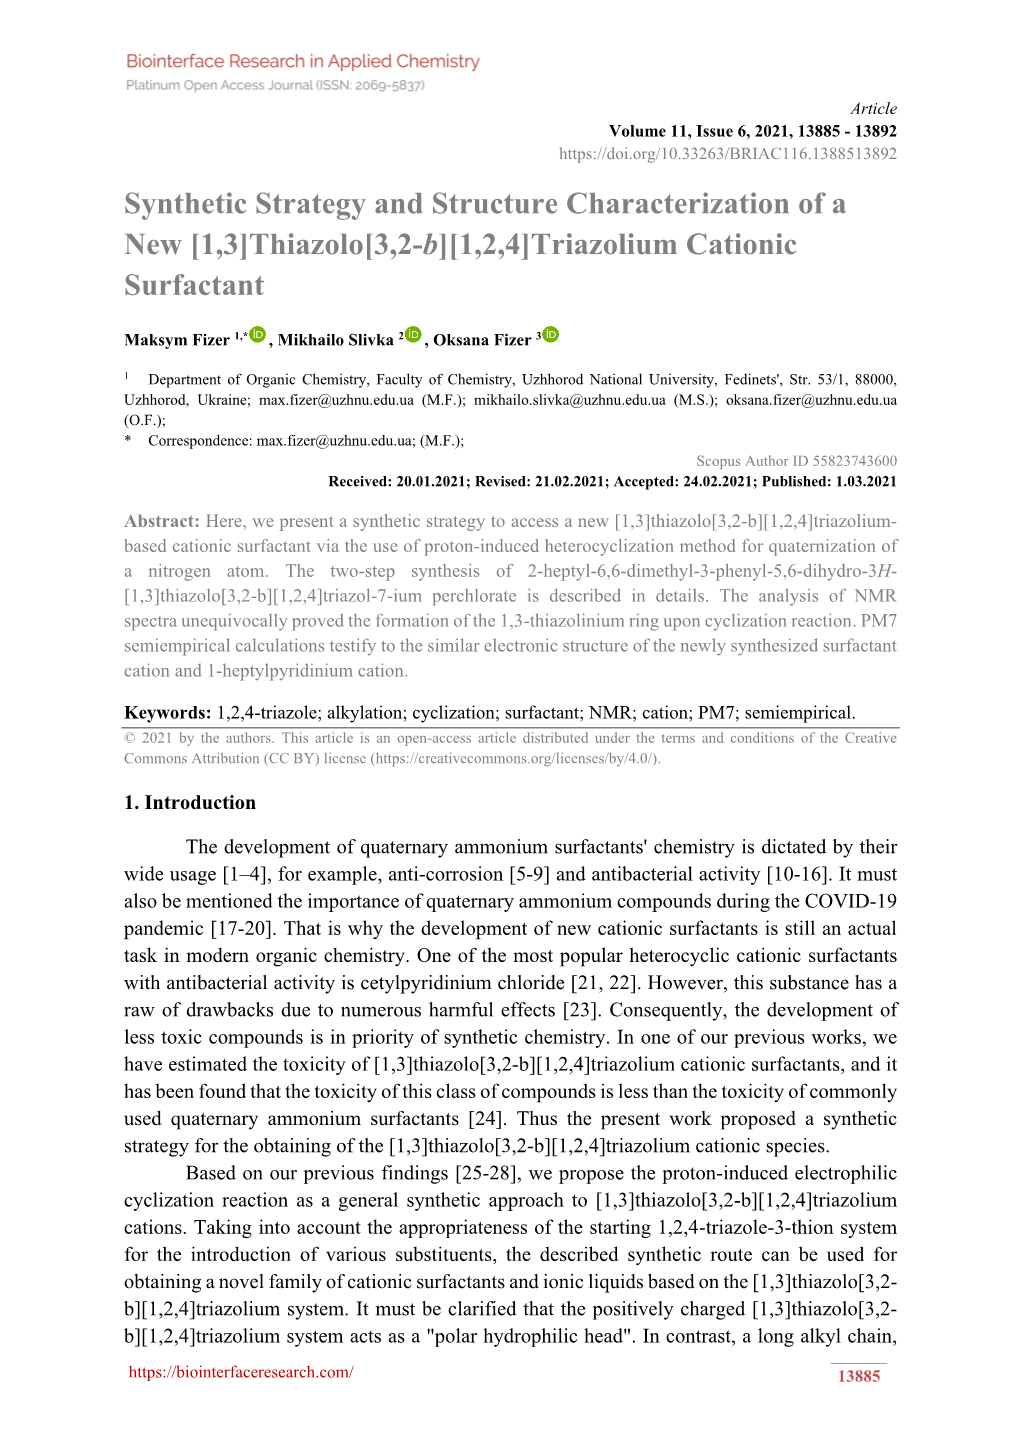 Thiazolo[3,2-B][1,2,4]Triazolium Cationic Surfactant